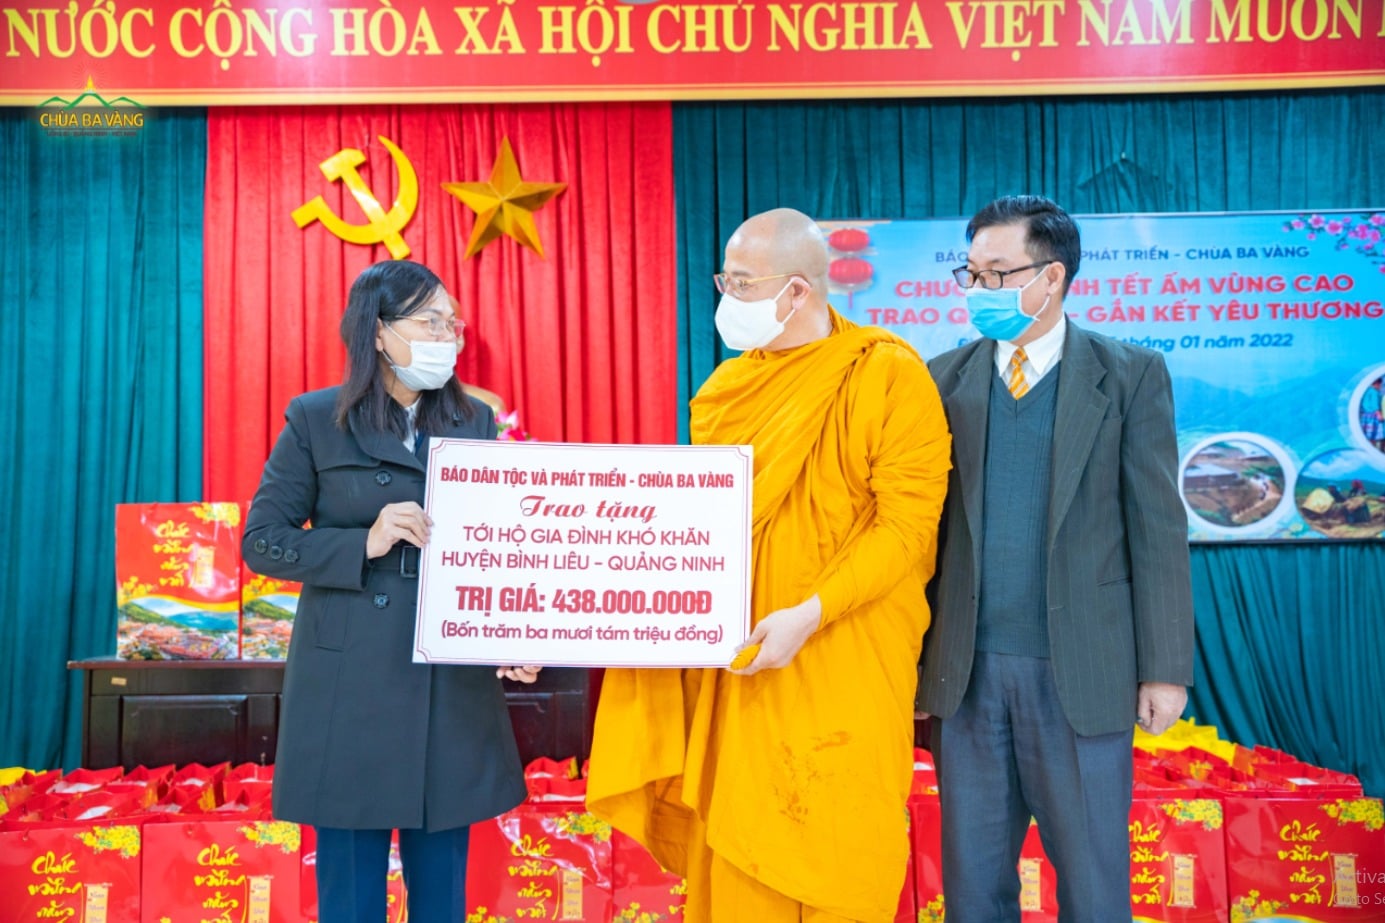 Tổng giá trị phần quà chùa Ba Vàng trao gửi tới bà con nhân dân khó khăn huyện Bình Liêu là 438 triệu đồng